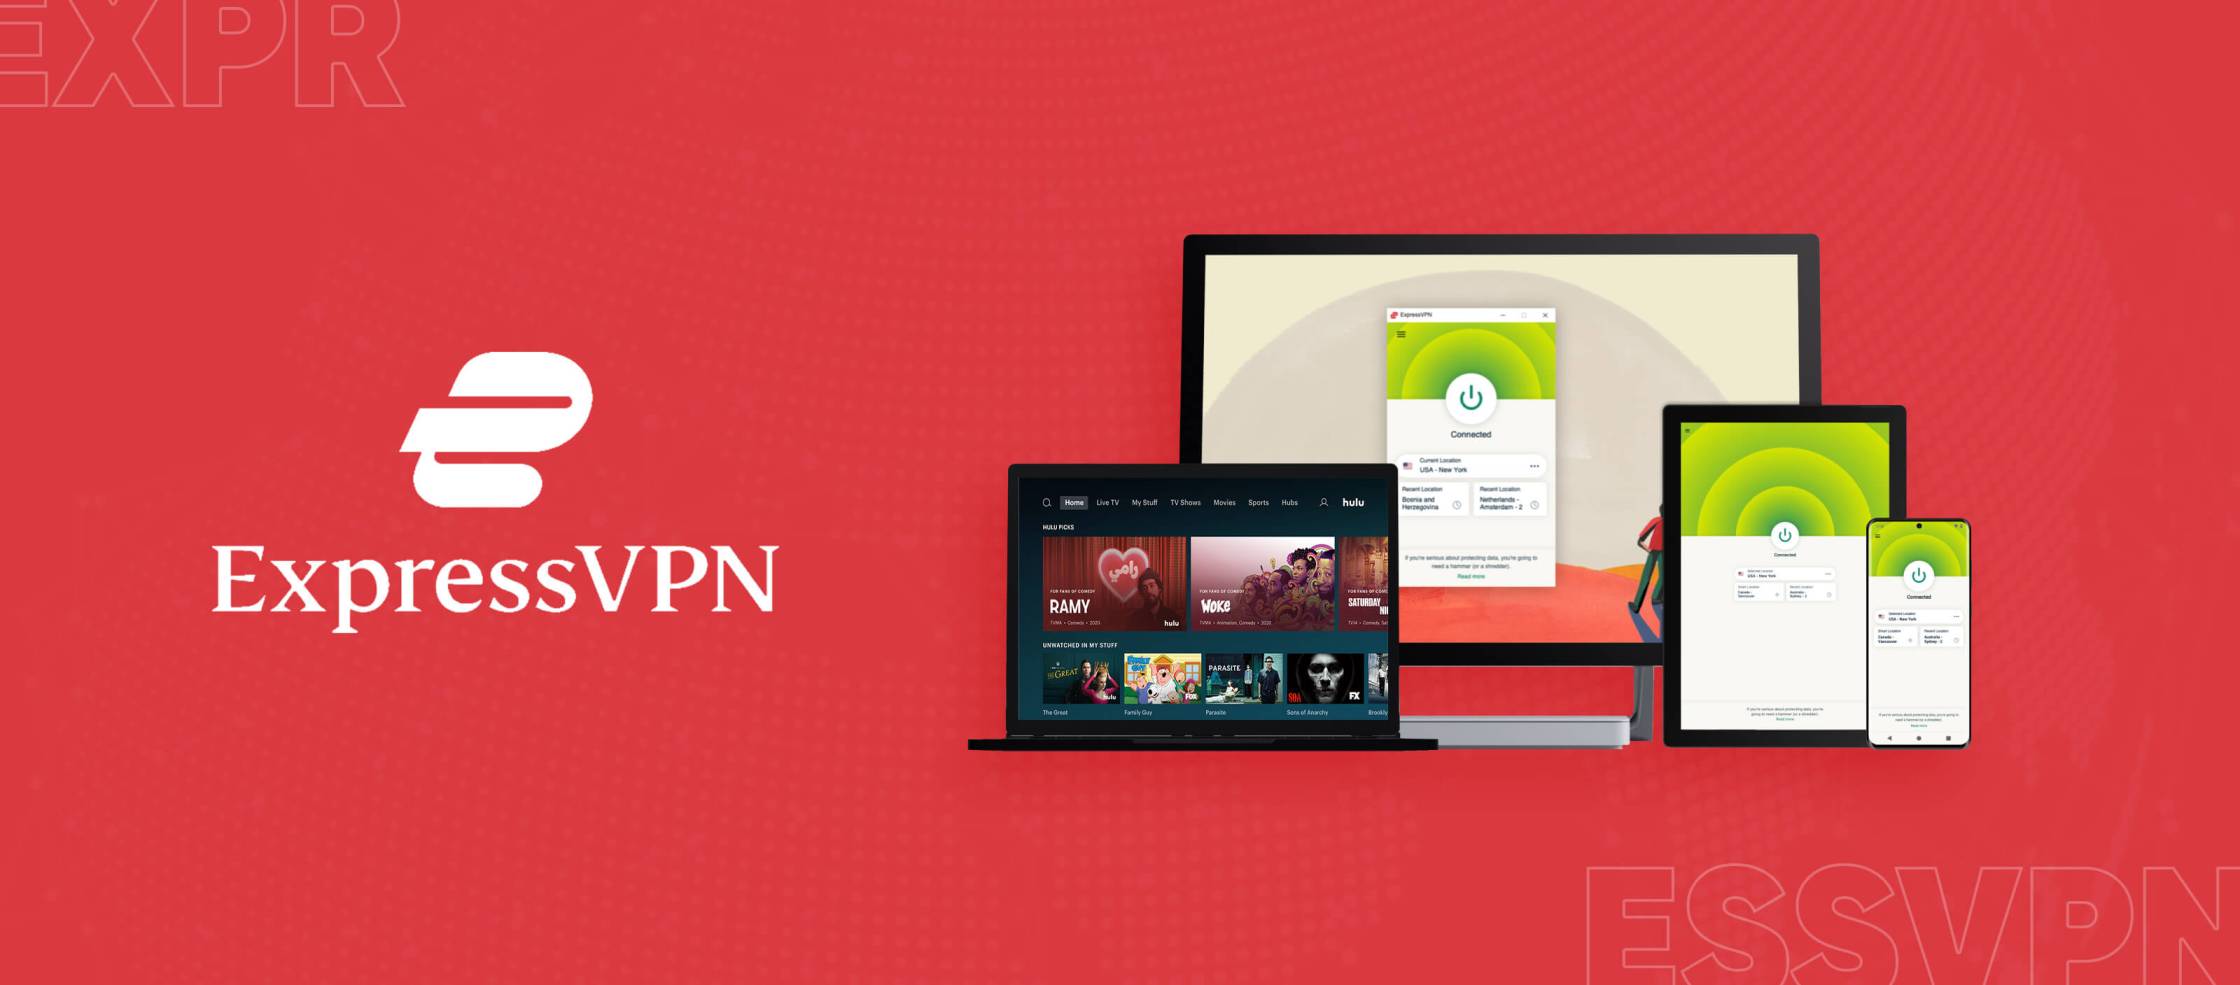 ExpressVPN-Hulu ExpressVPN-Hulu est un service de réseau privé virtuel (VPN) qui permet aux utilisateurs d'accéder à Hulu, une plateforme de streaming de contenu en ligne. Avec ExpressVPN-Hulu, les utilisateurs peuvent contourner les restrictions géographiques et accéder à Hulu depuis n'importe où dans le monde. Cela leur permet de profiter de leurs émissions et films préférés, même s'ils se trouvent en 